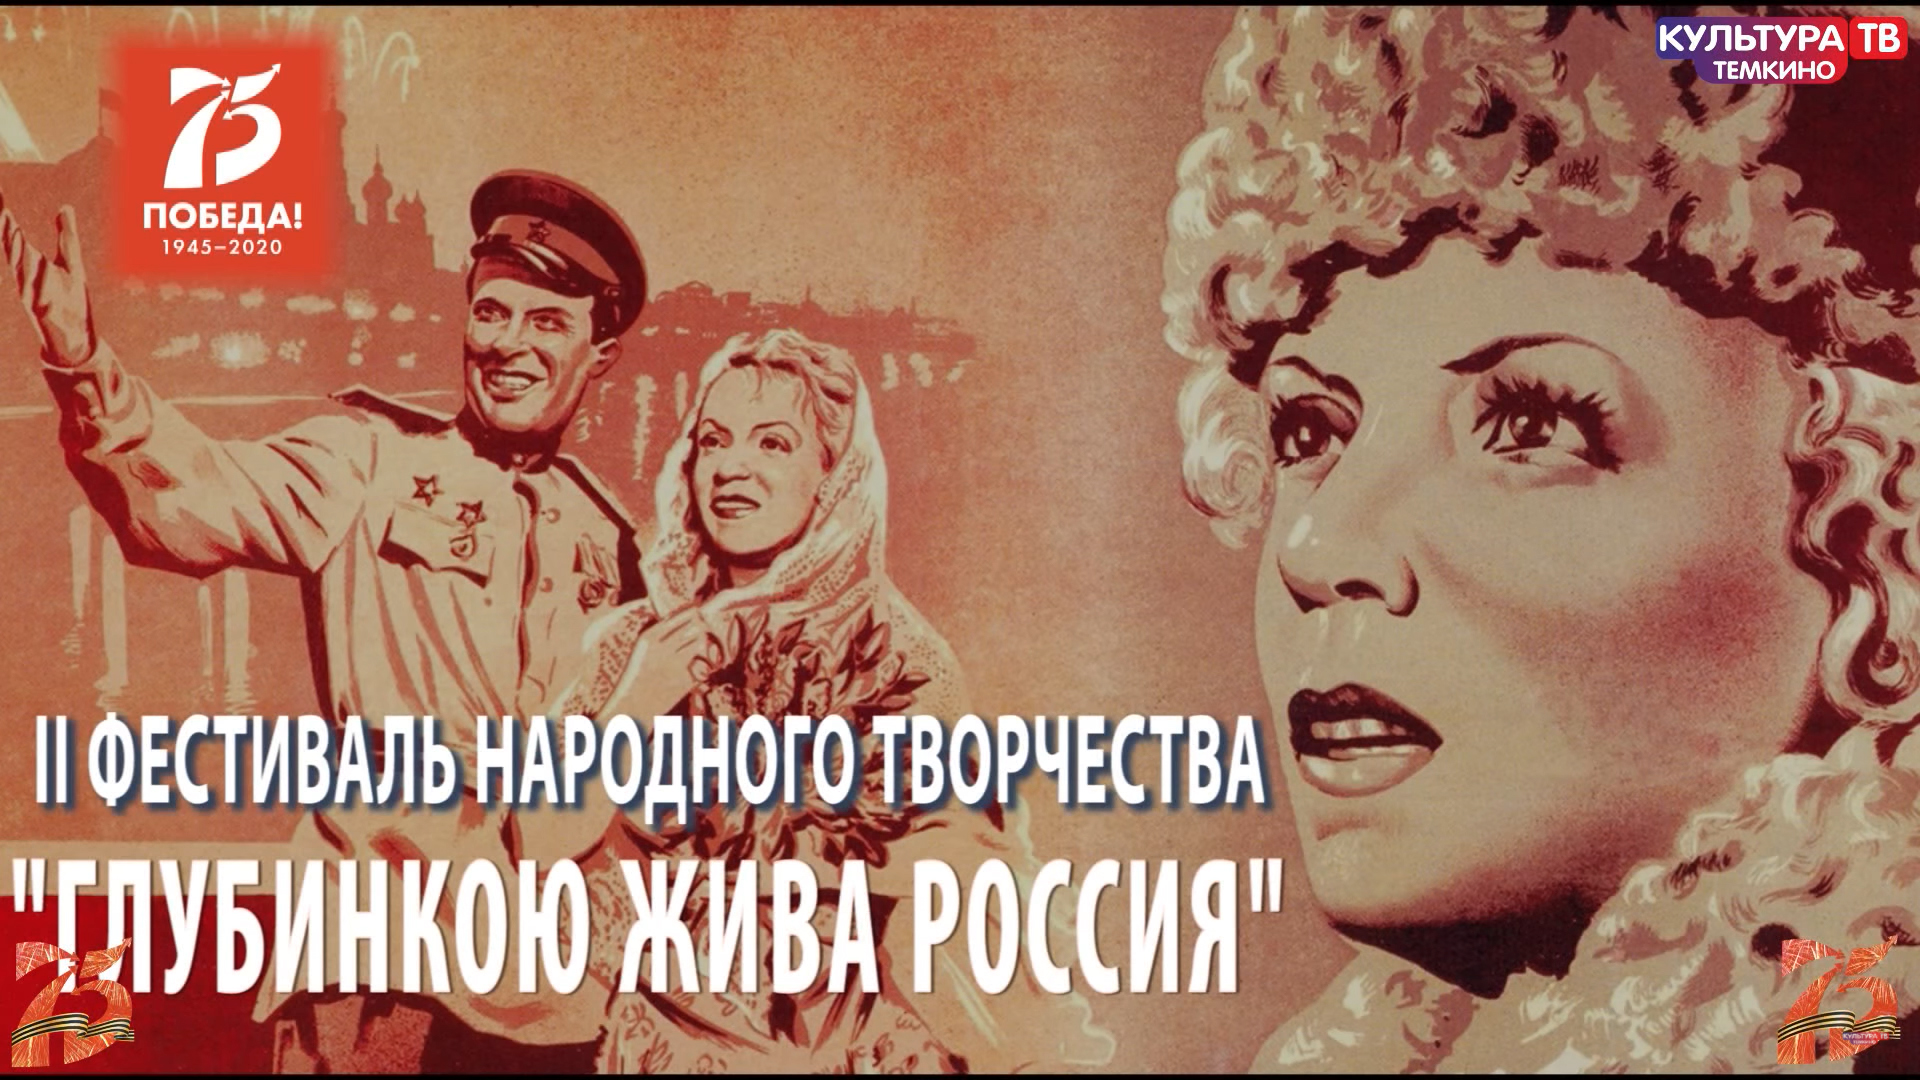 «Культура ТВ Тёмкино»: 400 тысяч просмотров 